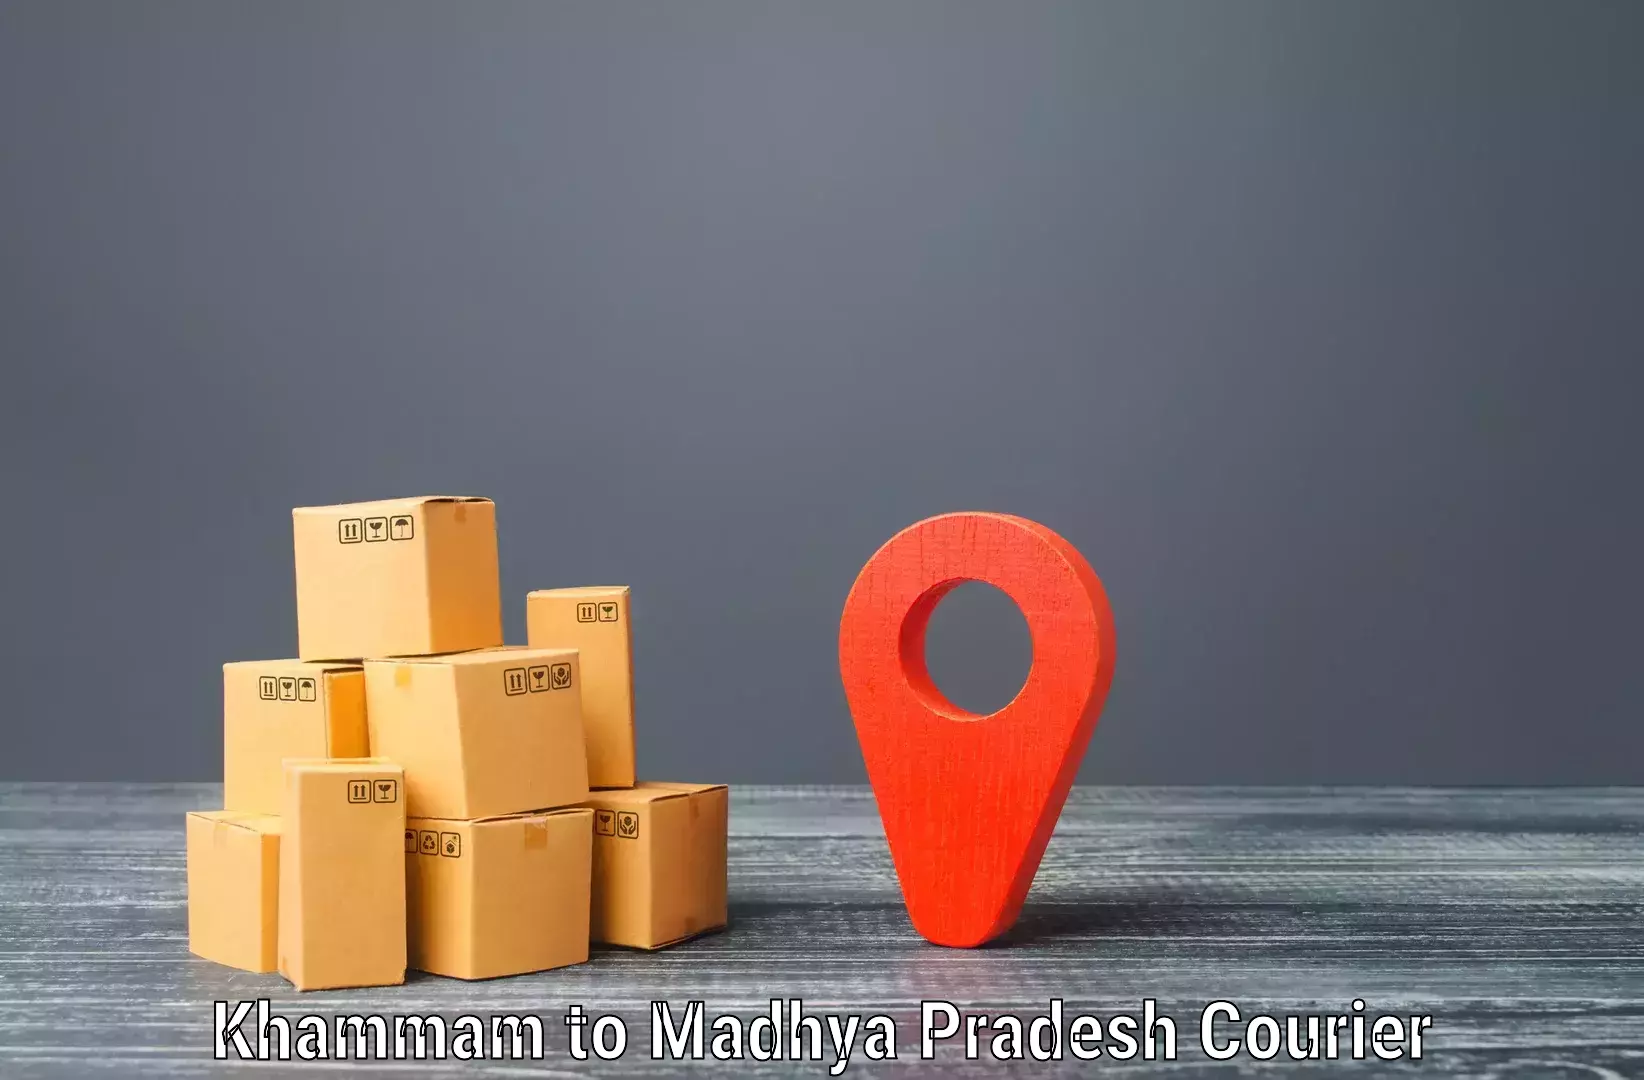 Flexible delivery schedules in Khammam to Gadarwara